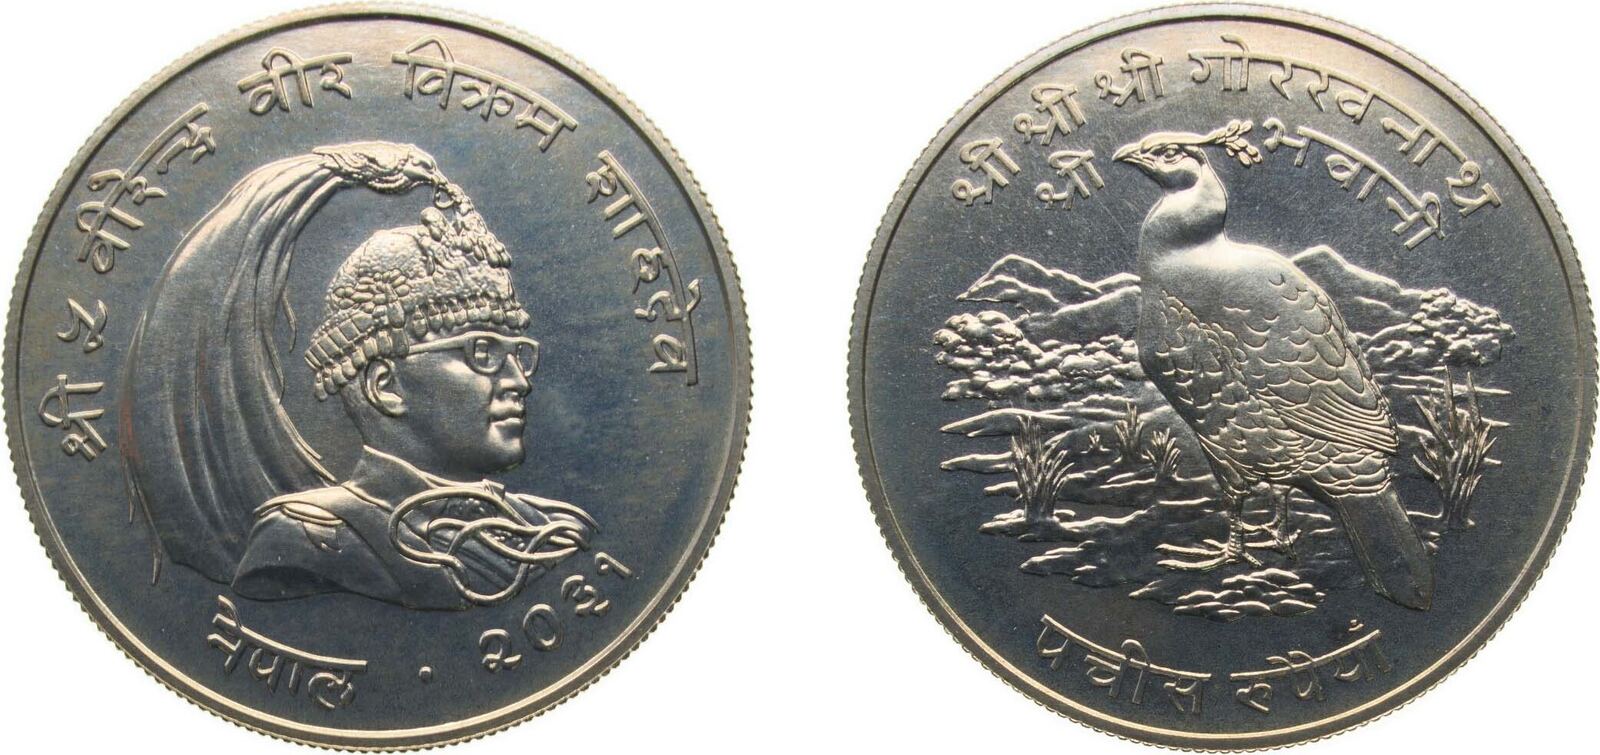 VS 2031 (1974) Royal Mint Nepal Kingdom VS 2031 (1974) 25 Rupees